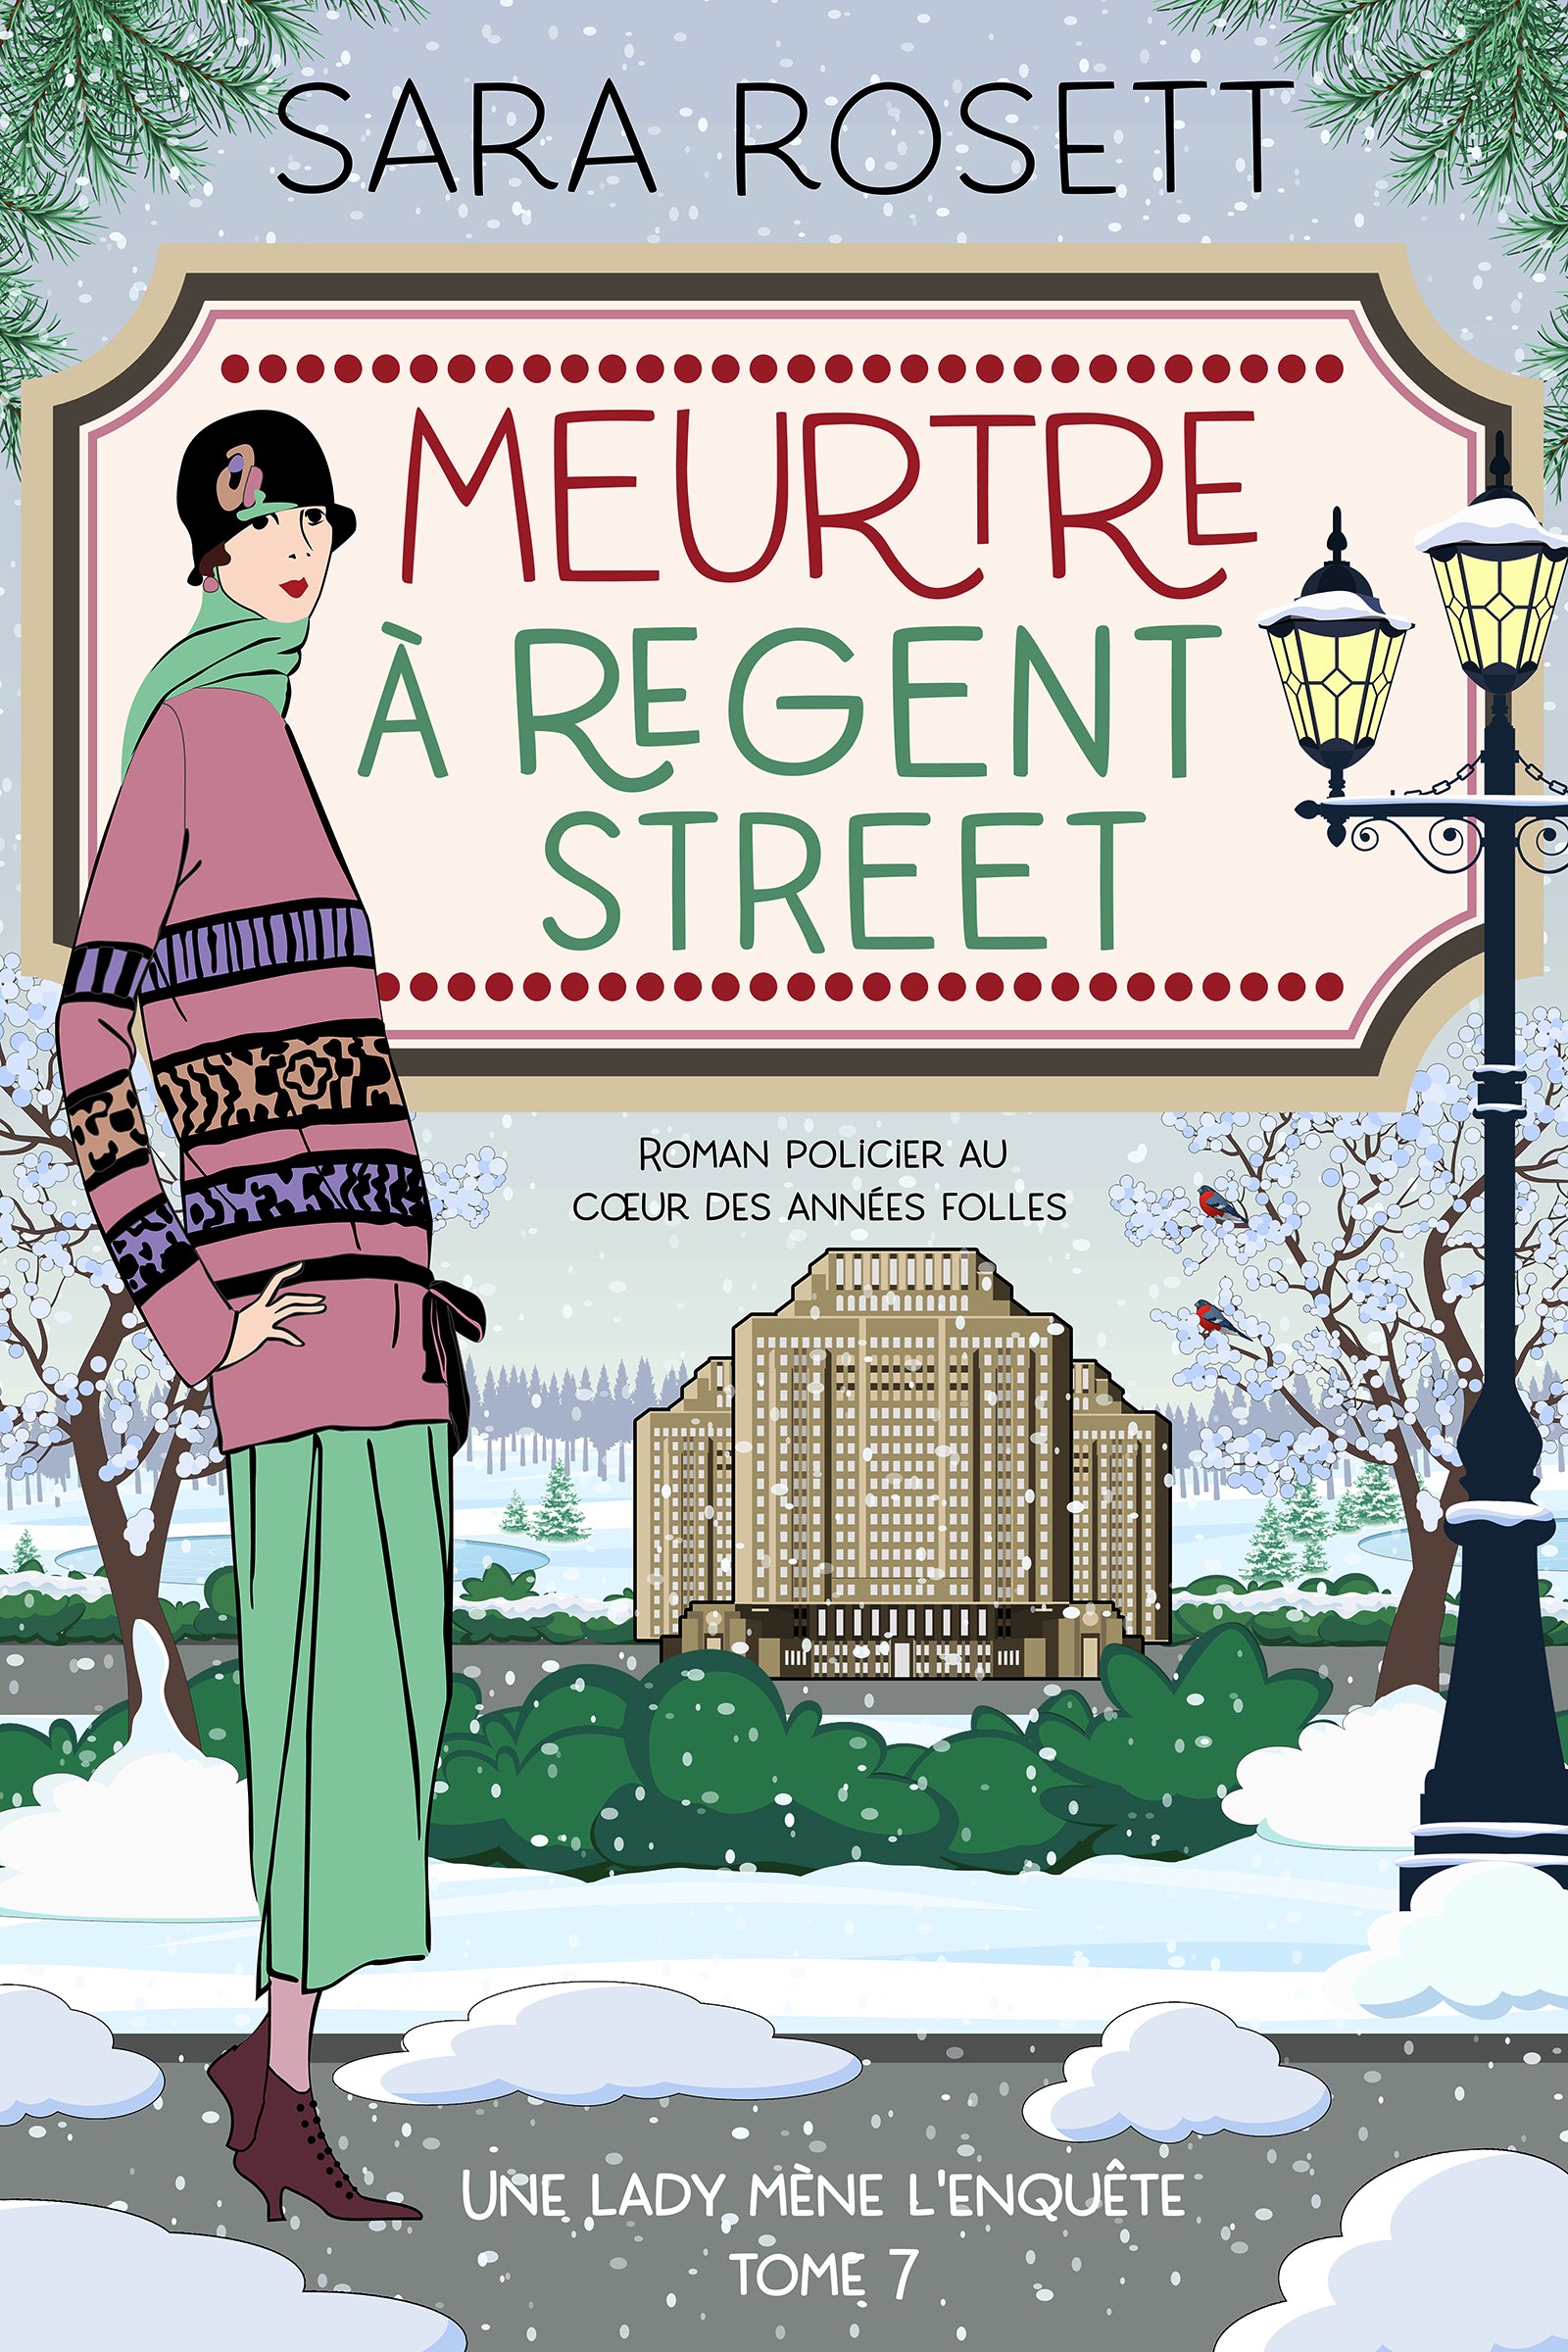 Meurtre-A-Regent-Street